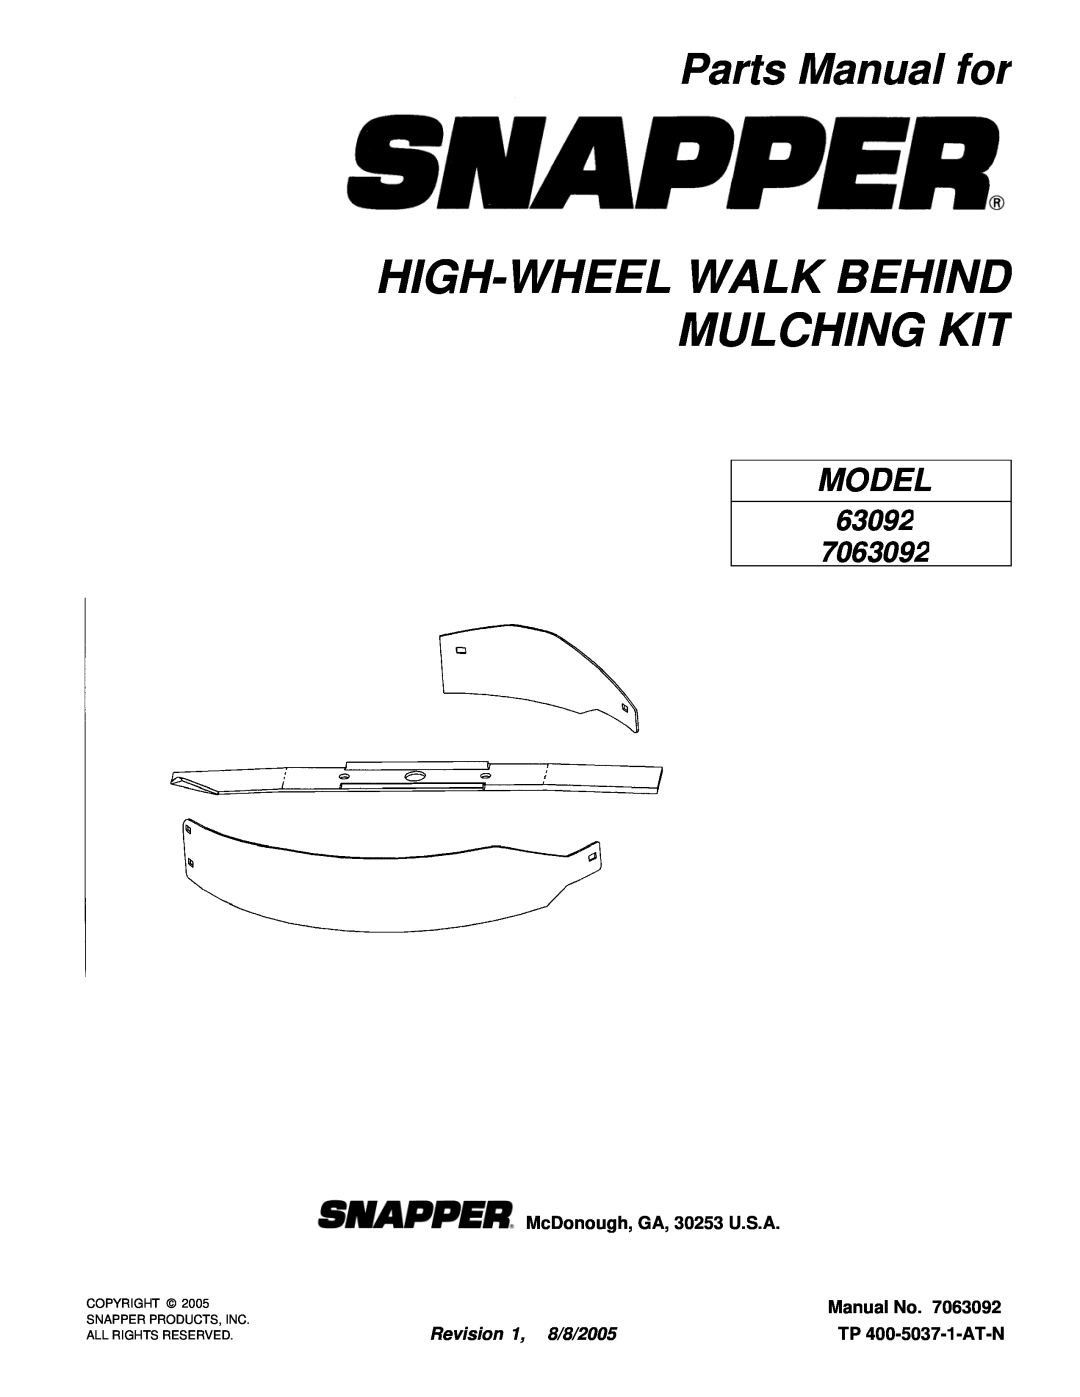 Snapper 63092 manual High-Wheelwalk Behind Mulching Kit, Parts Manual for, McDonough, GA, 30253 U.S.A, Manual No, Model 